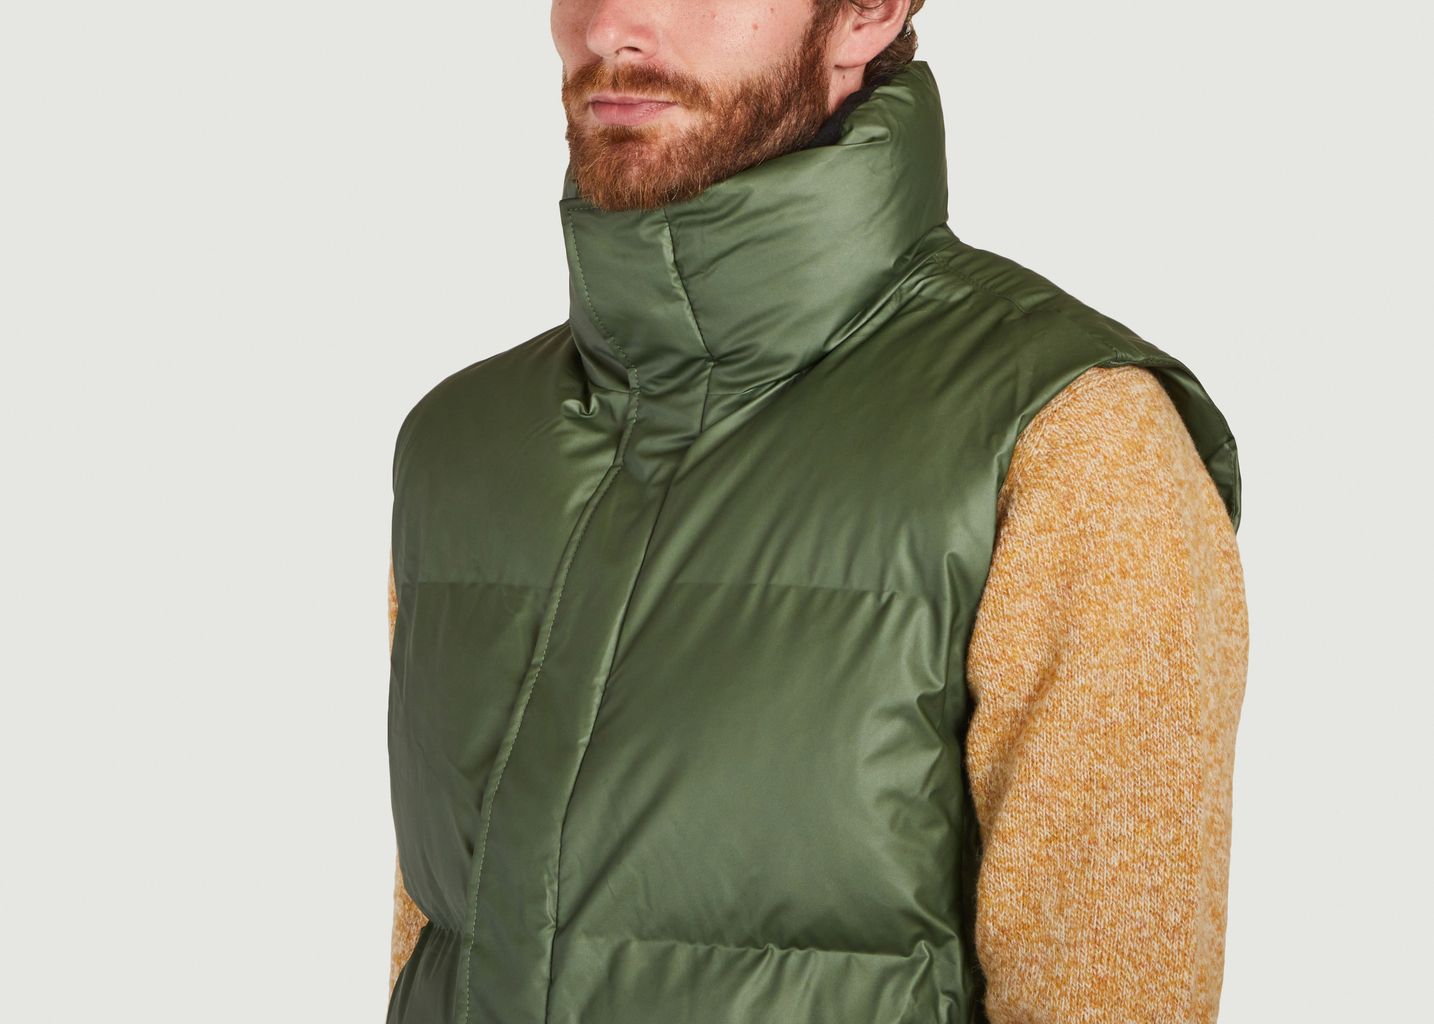 Short sleeveless boxy jacket - Rains